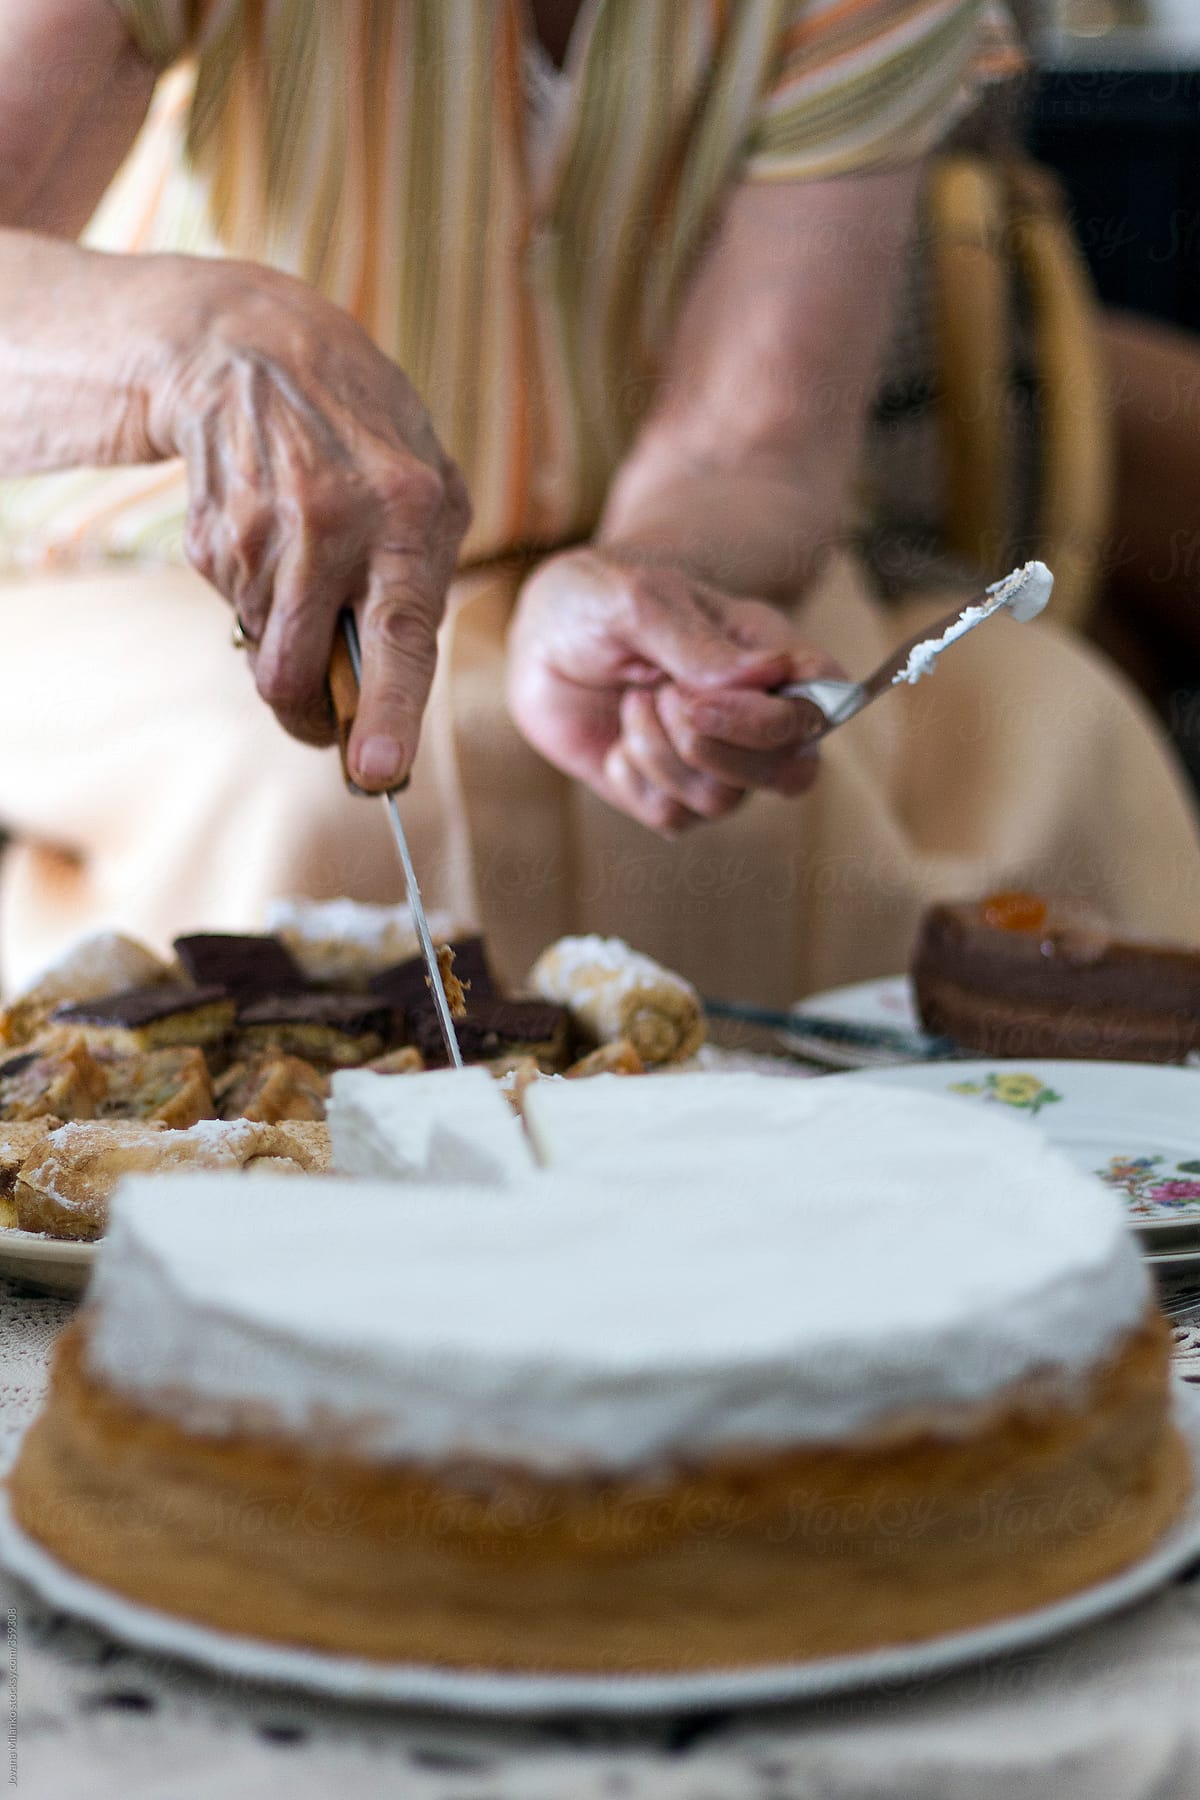 Old woman cutting cake